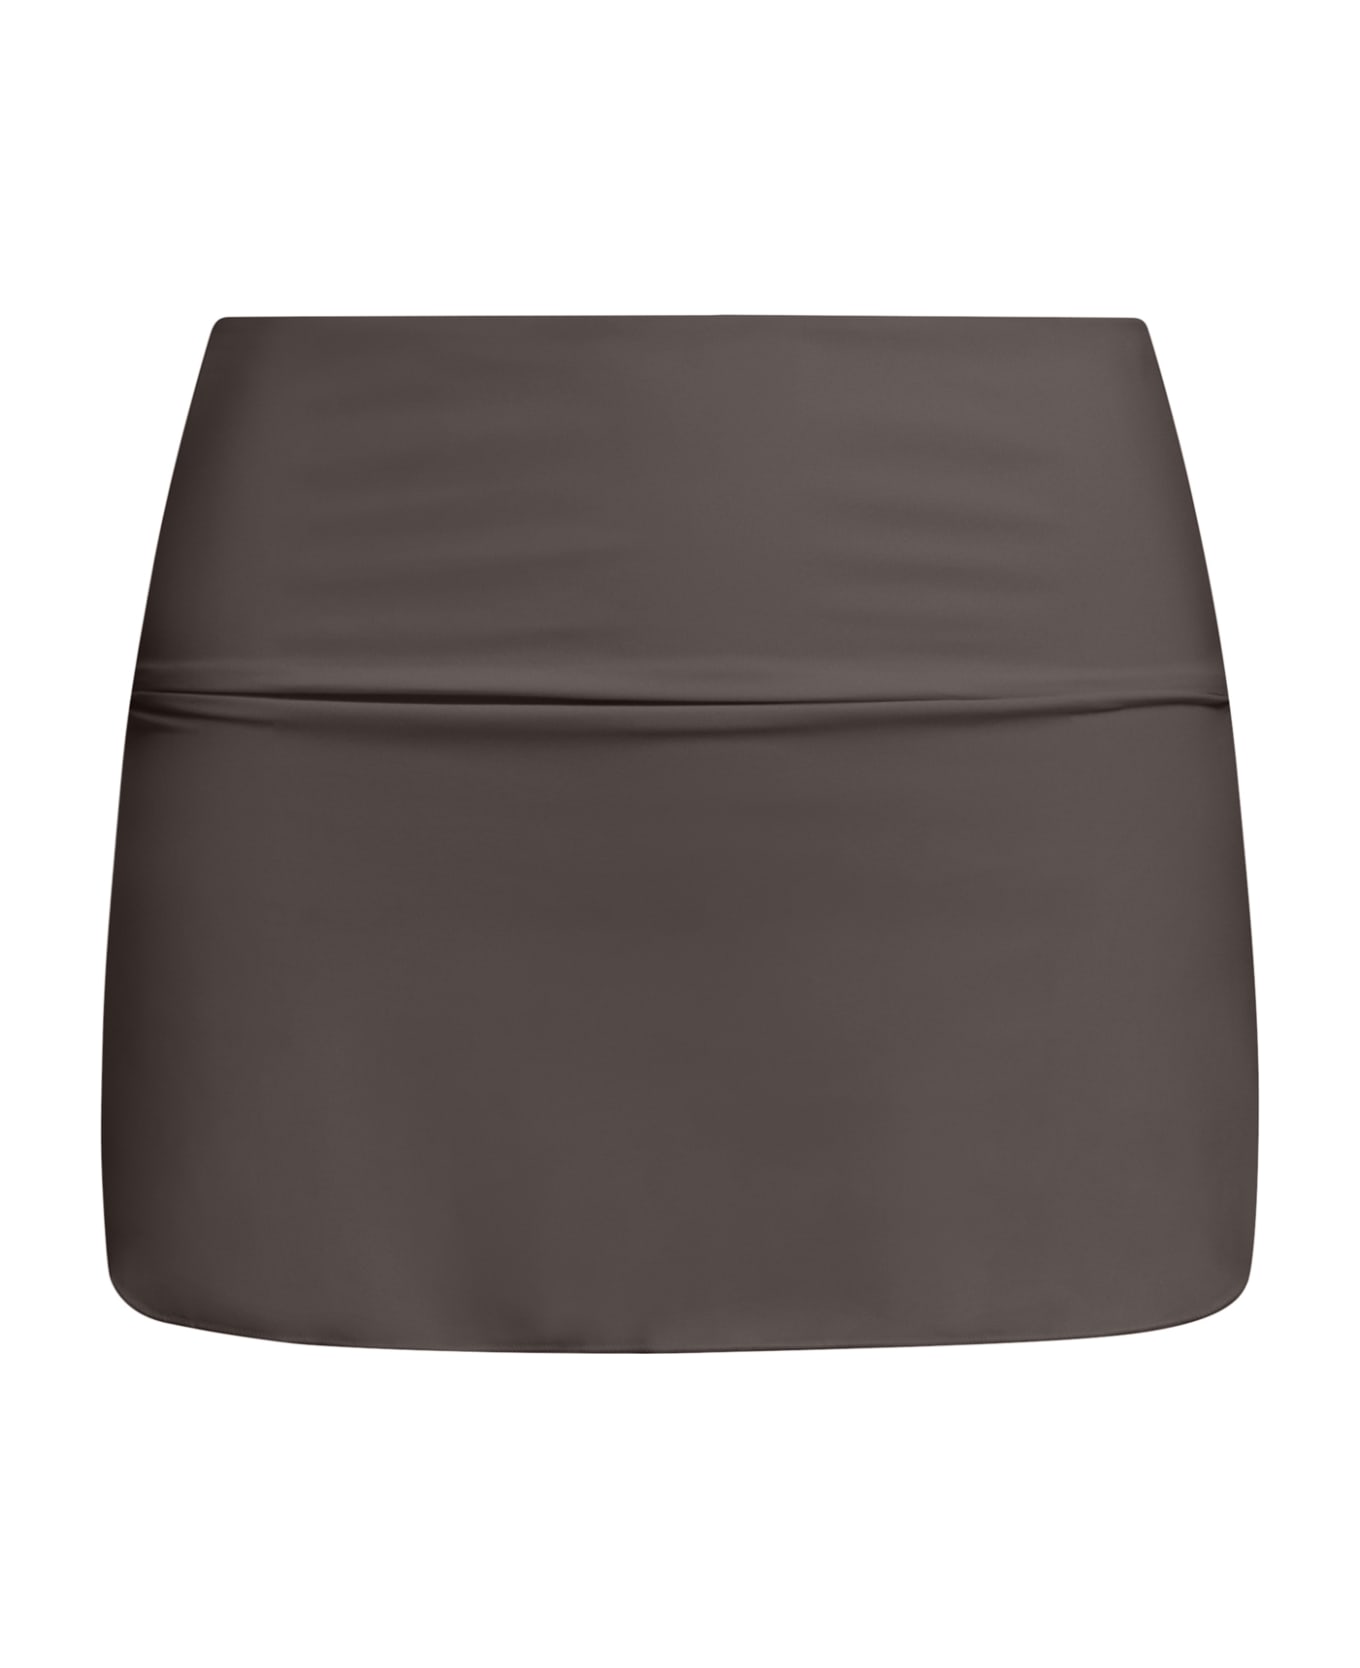 Sucrette Pareo Skirt - Cioccolato